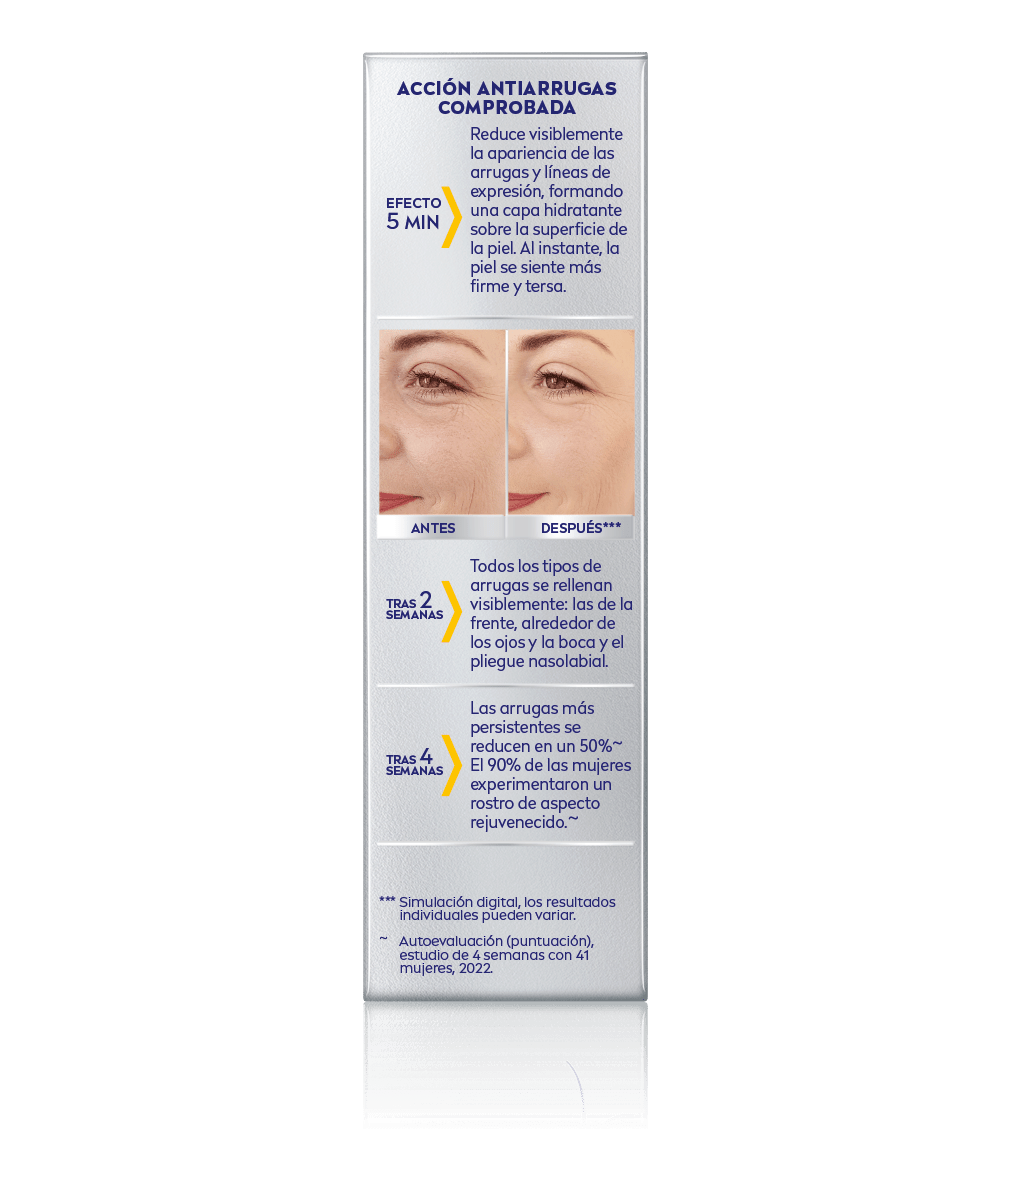 Q10 Antiarrugas Expert Serum Tratamiento Concentrado